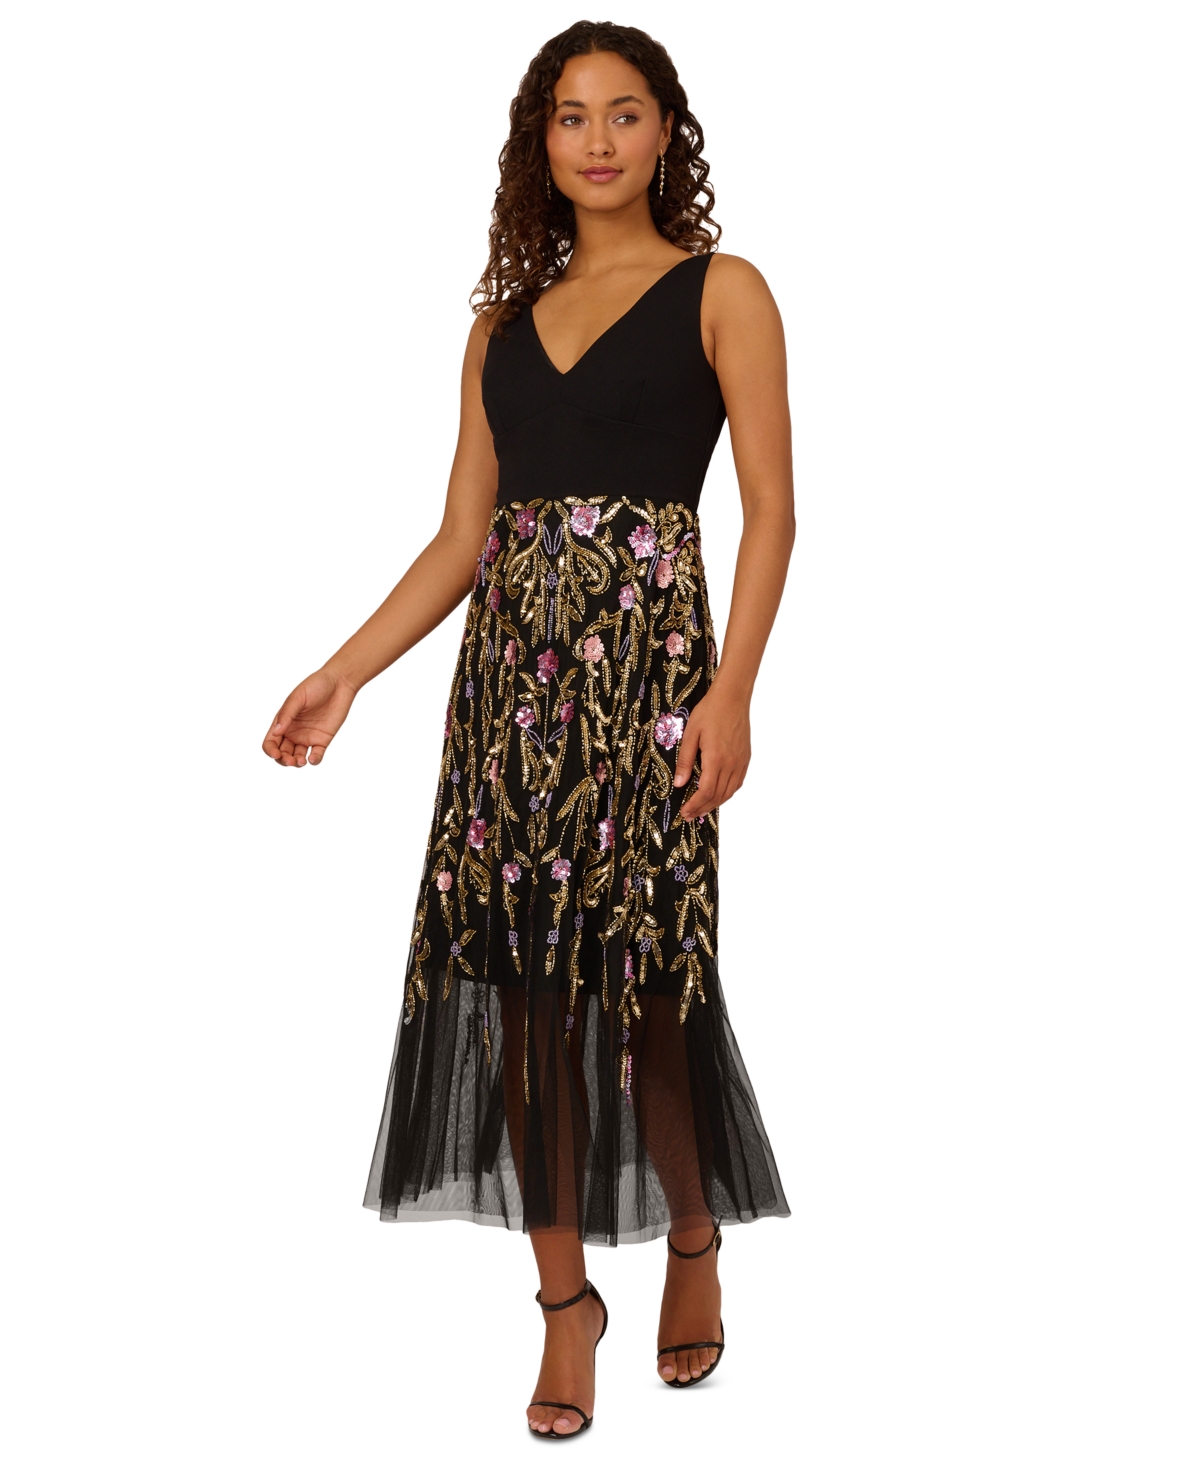 Women's V-Neck Embellished-Floral Dress - Black Multi